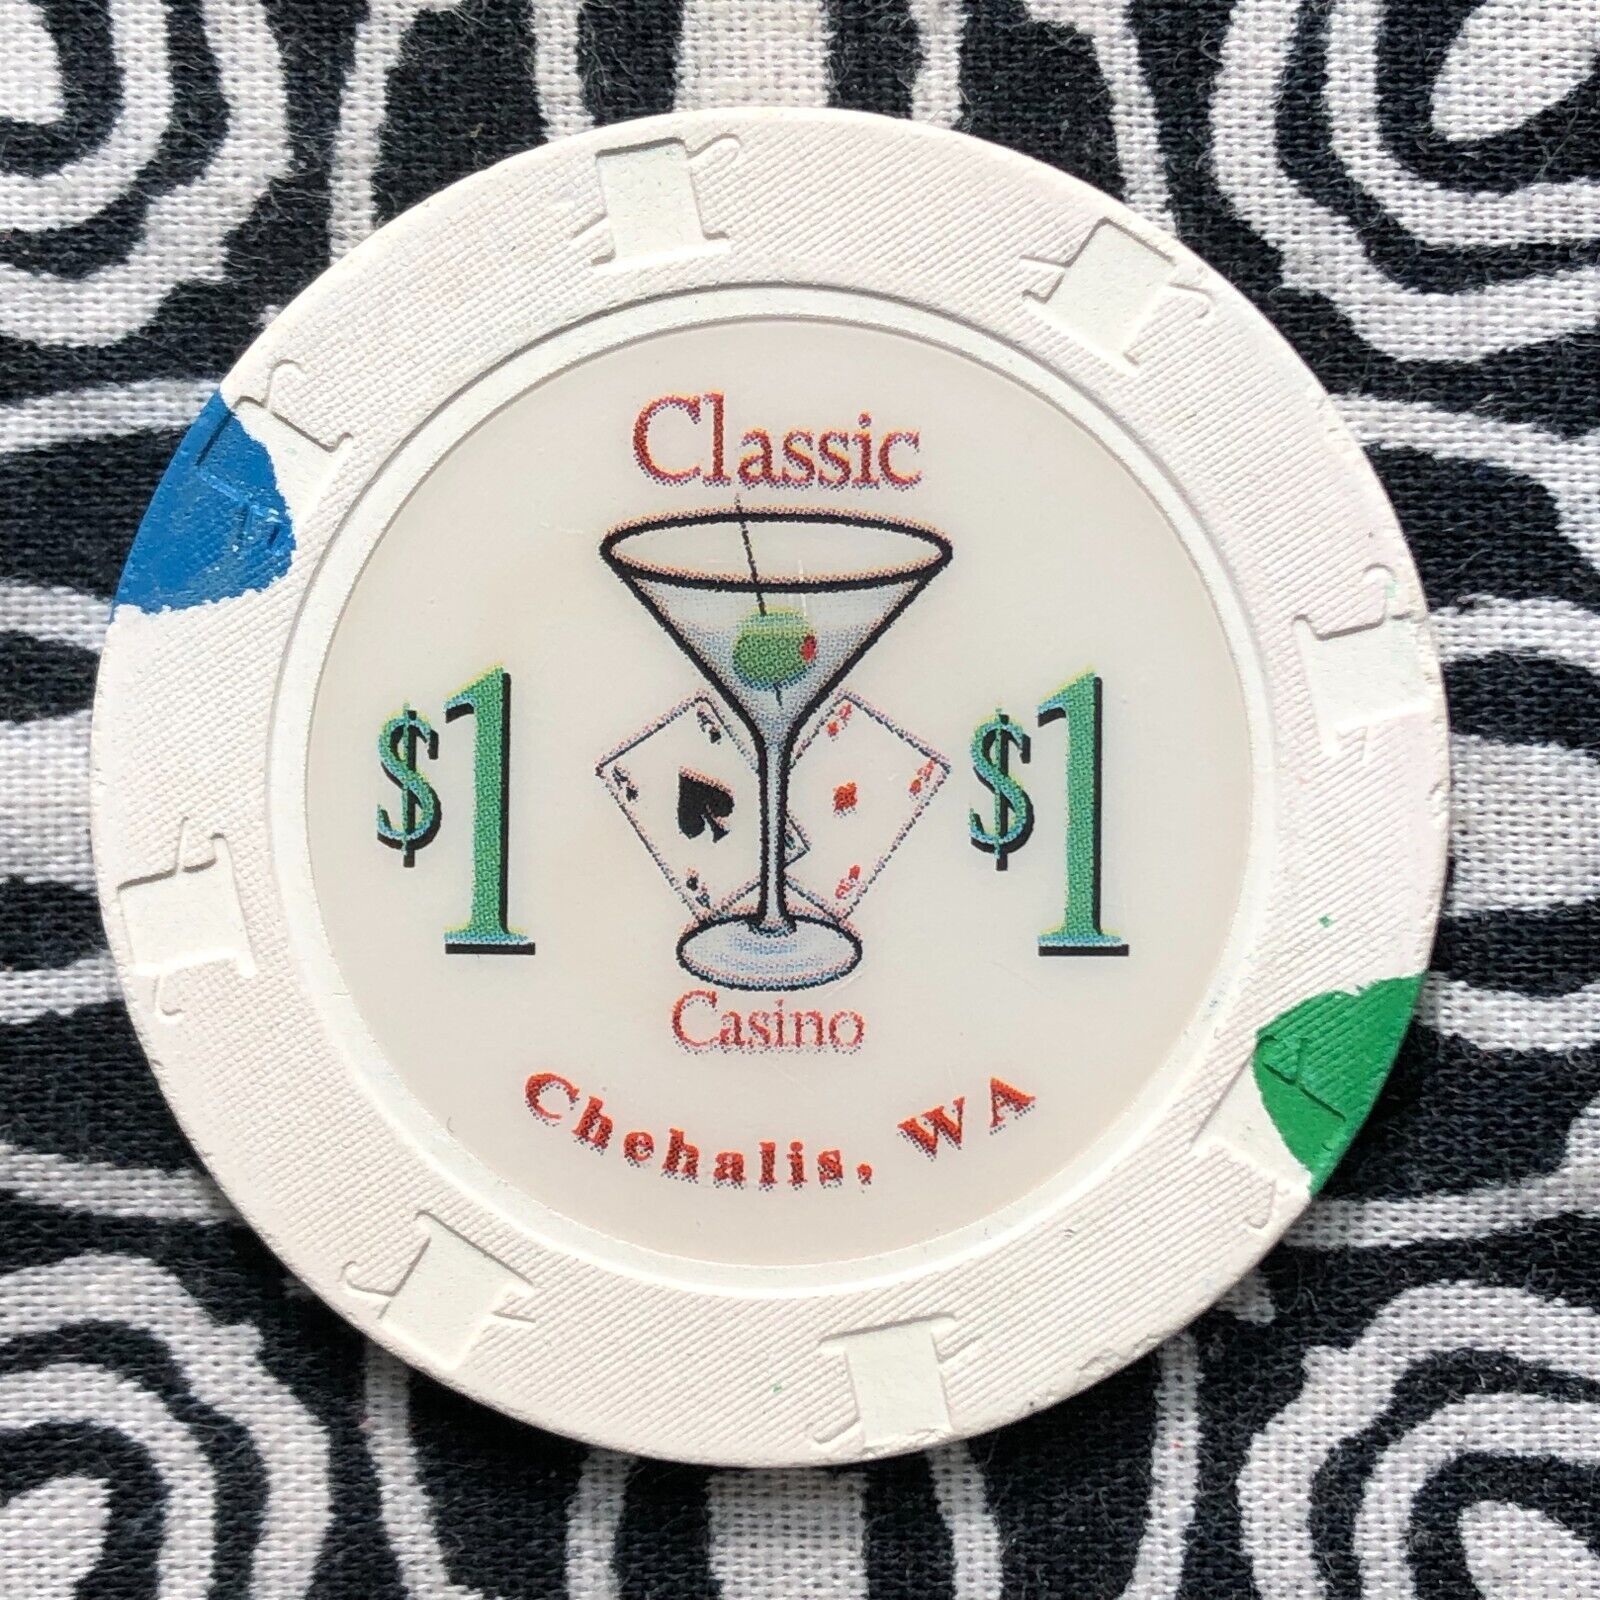 Classic Casino $1 Chehalis, Washington Gaming Poker Casino Chip M7